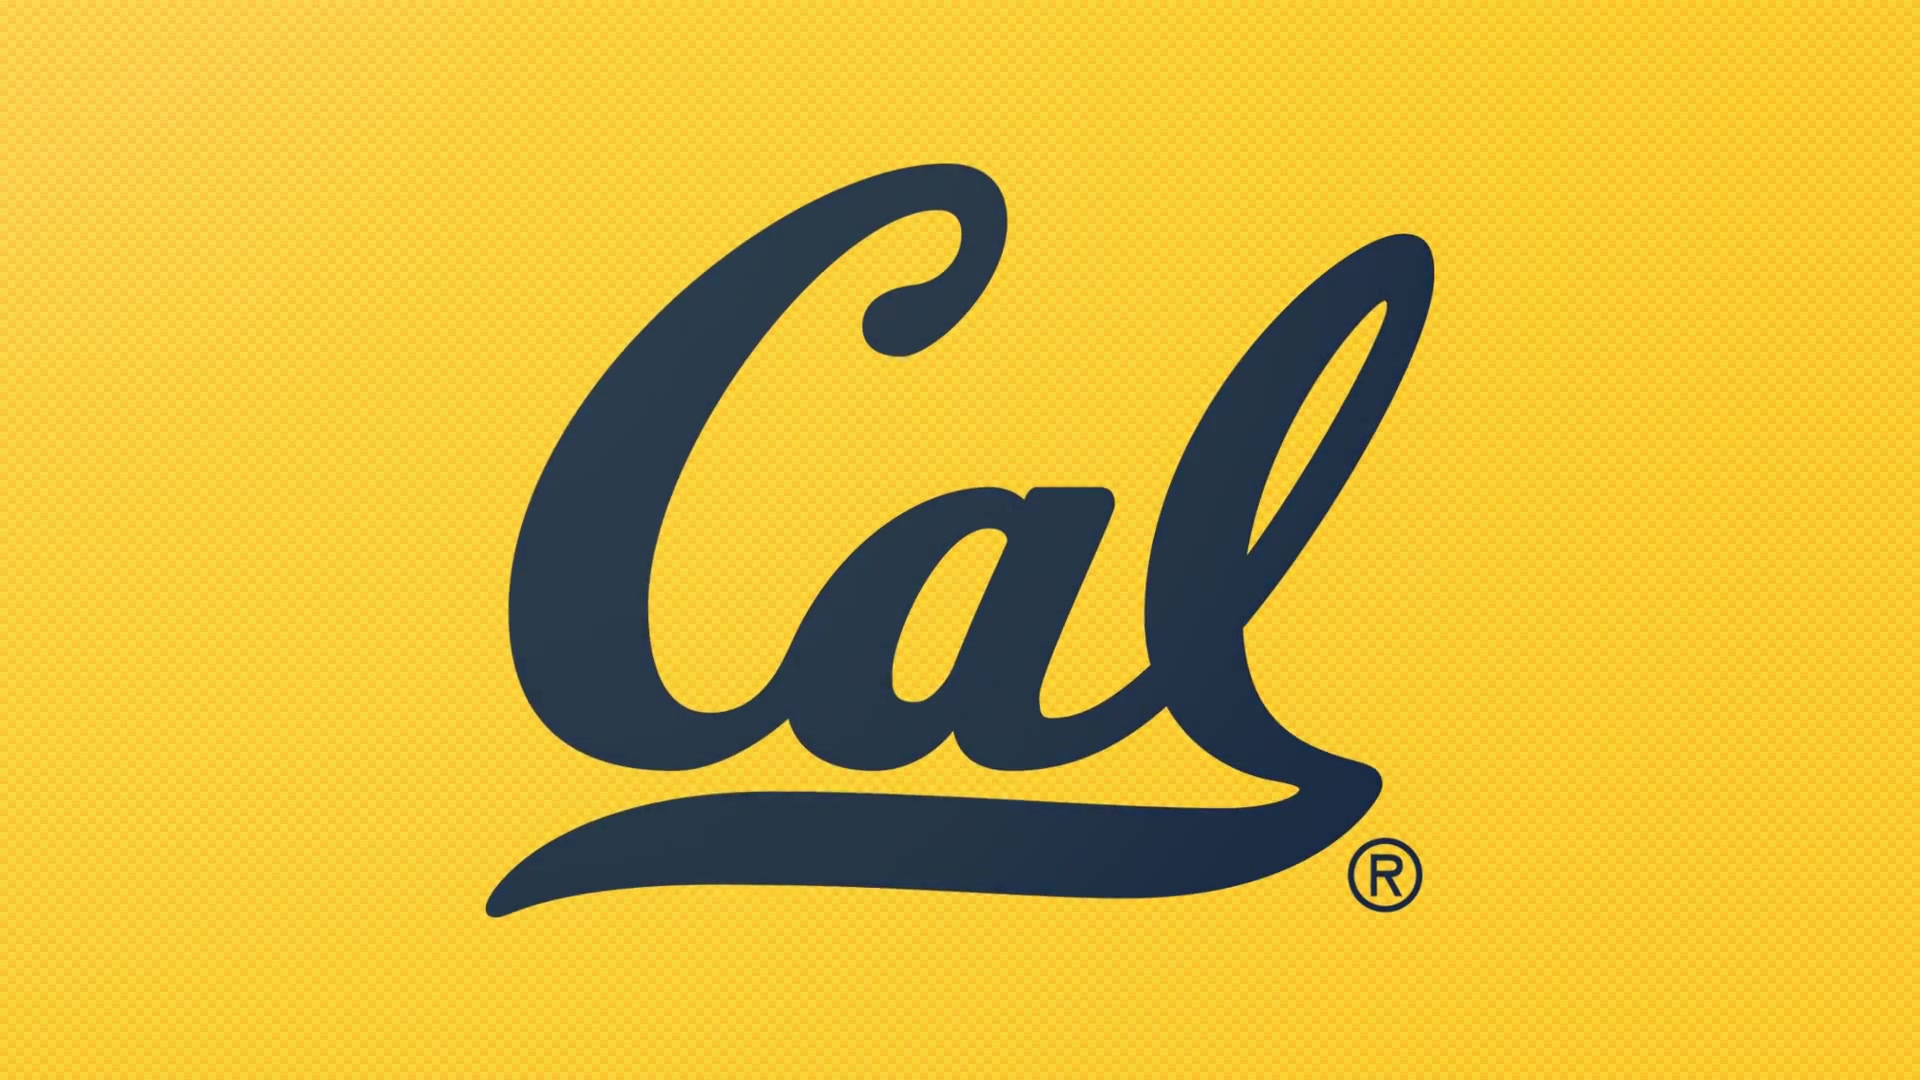 Cal Volleyball: Golden Bear Spotlight - The Schonewise'